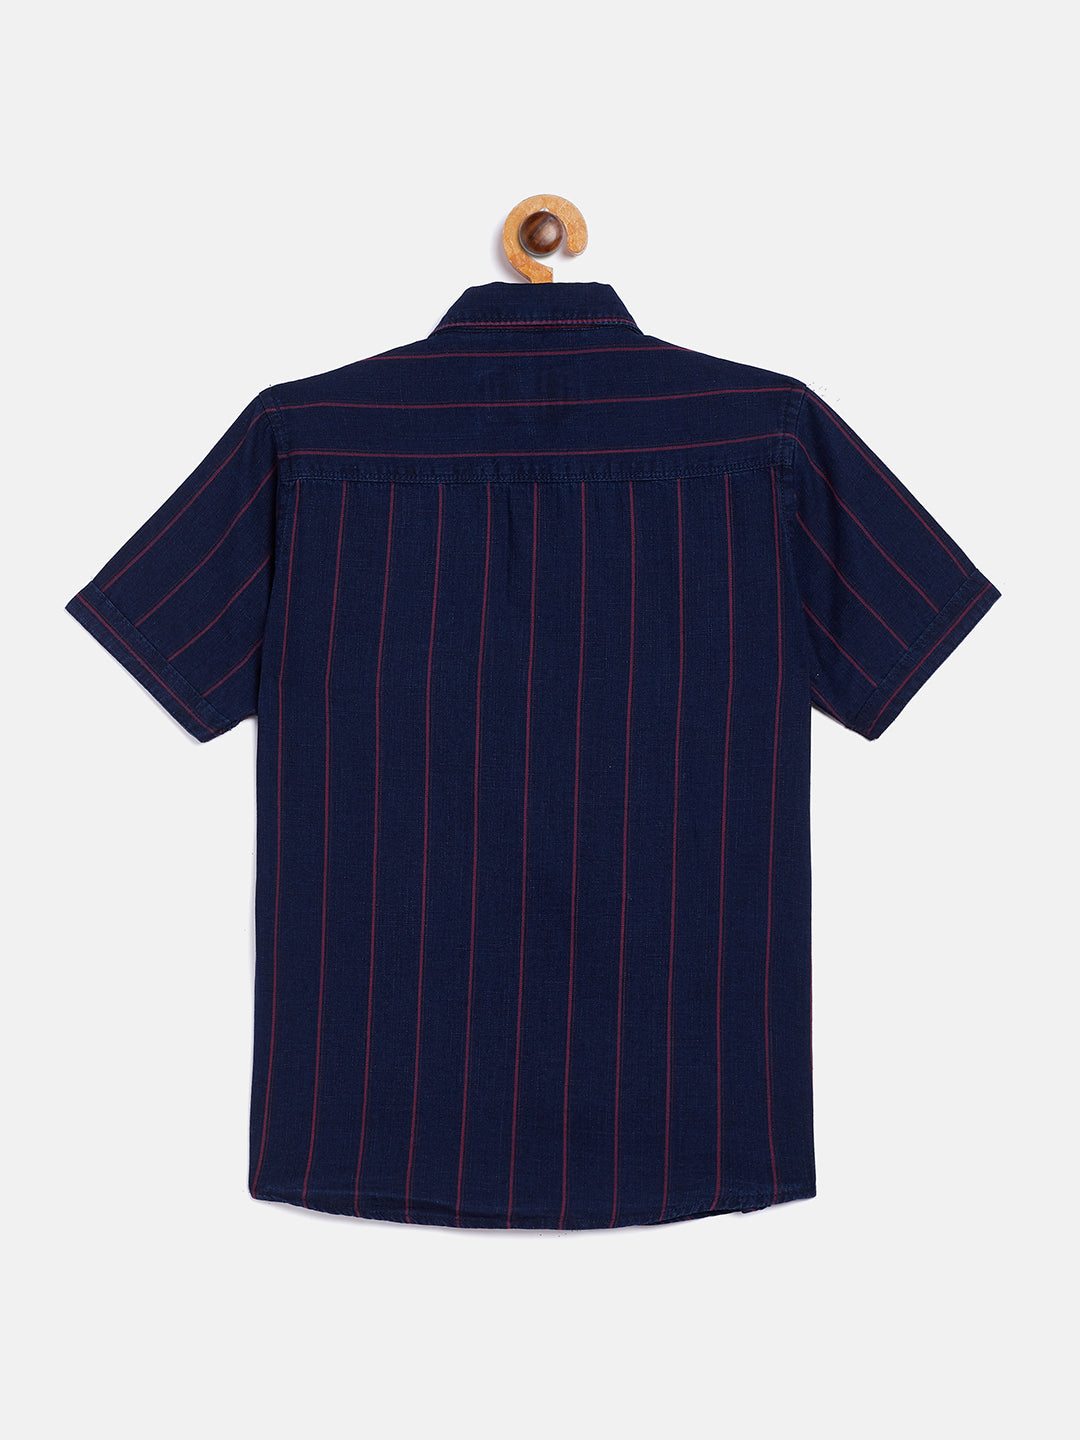 Navy Blue Striped Causal Shirt - Boys Shirts